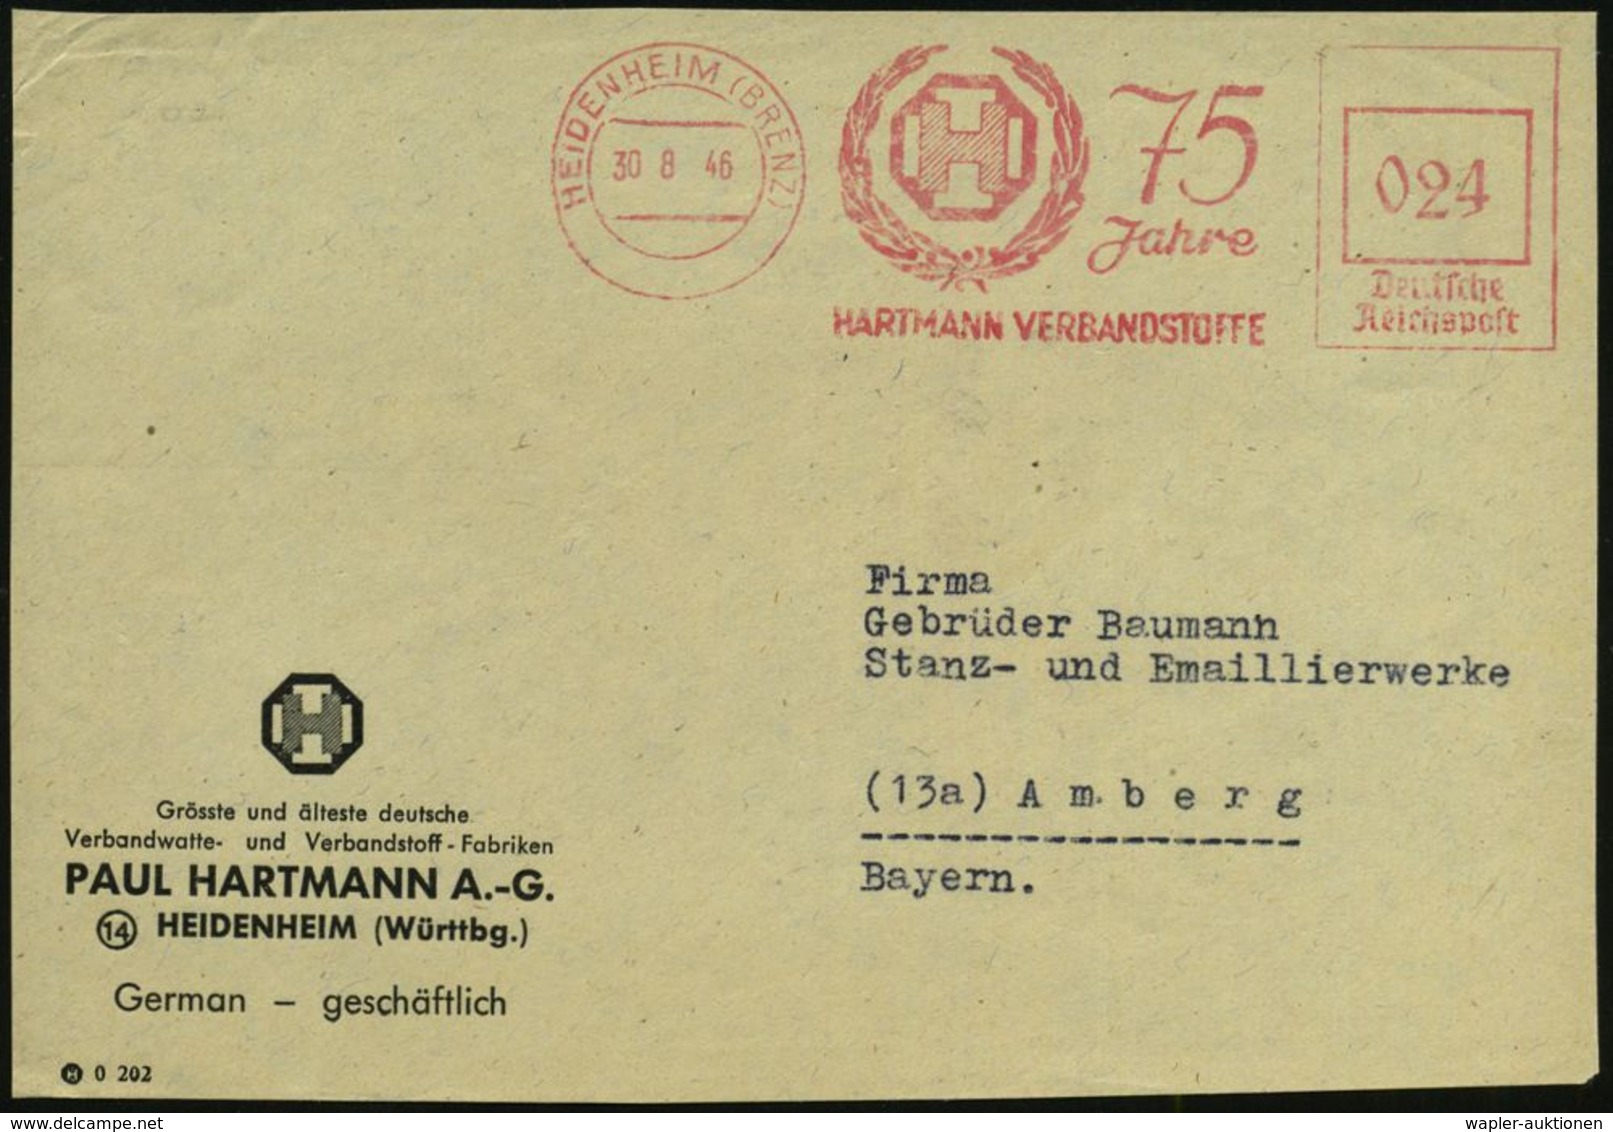 MEDIZINISCHE AUSRÜSTUNG & INSTRUMENTE : HEIDENHEIM (BRENZ)/ 75 Jahre/ HARTMANN VERBANDSSTOFFE 1946 (30.8.) Seltener, Apt - Médecine